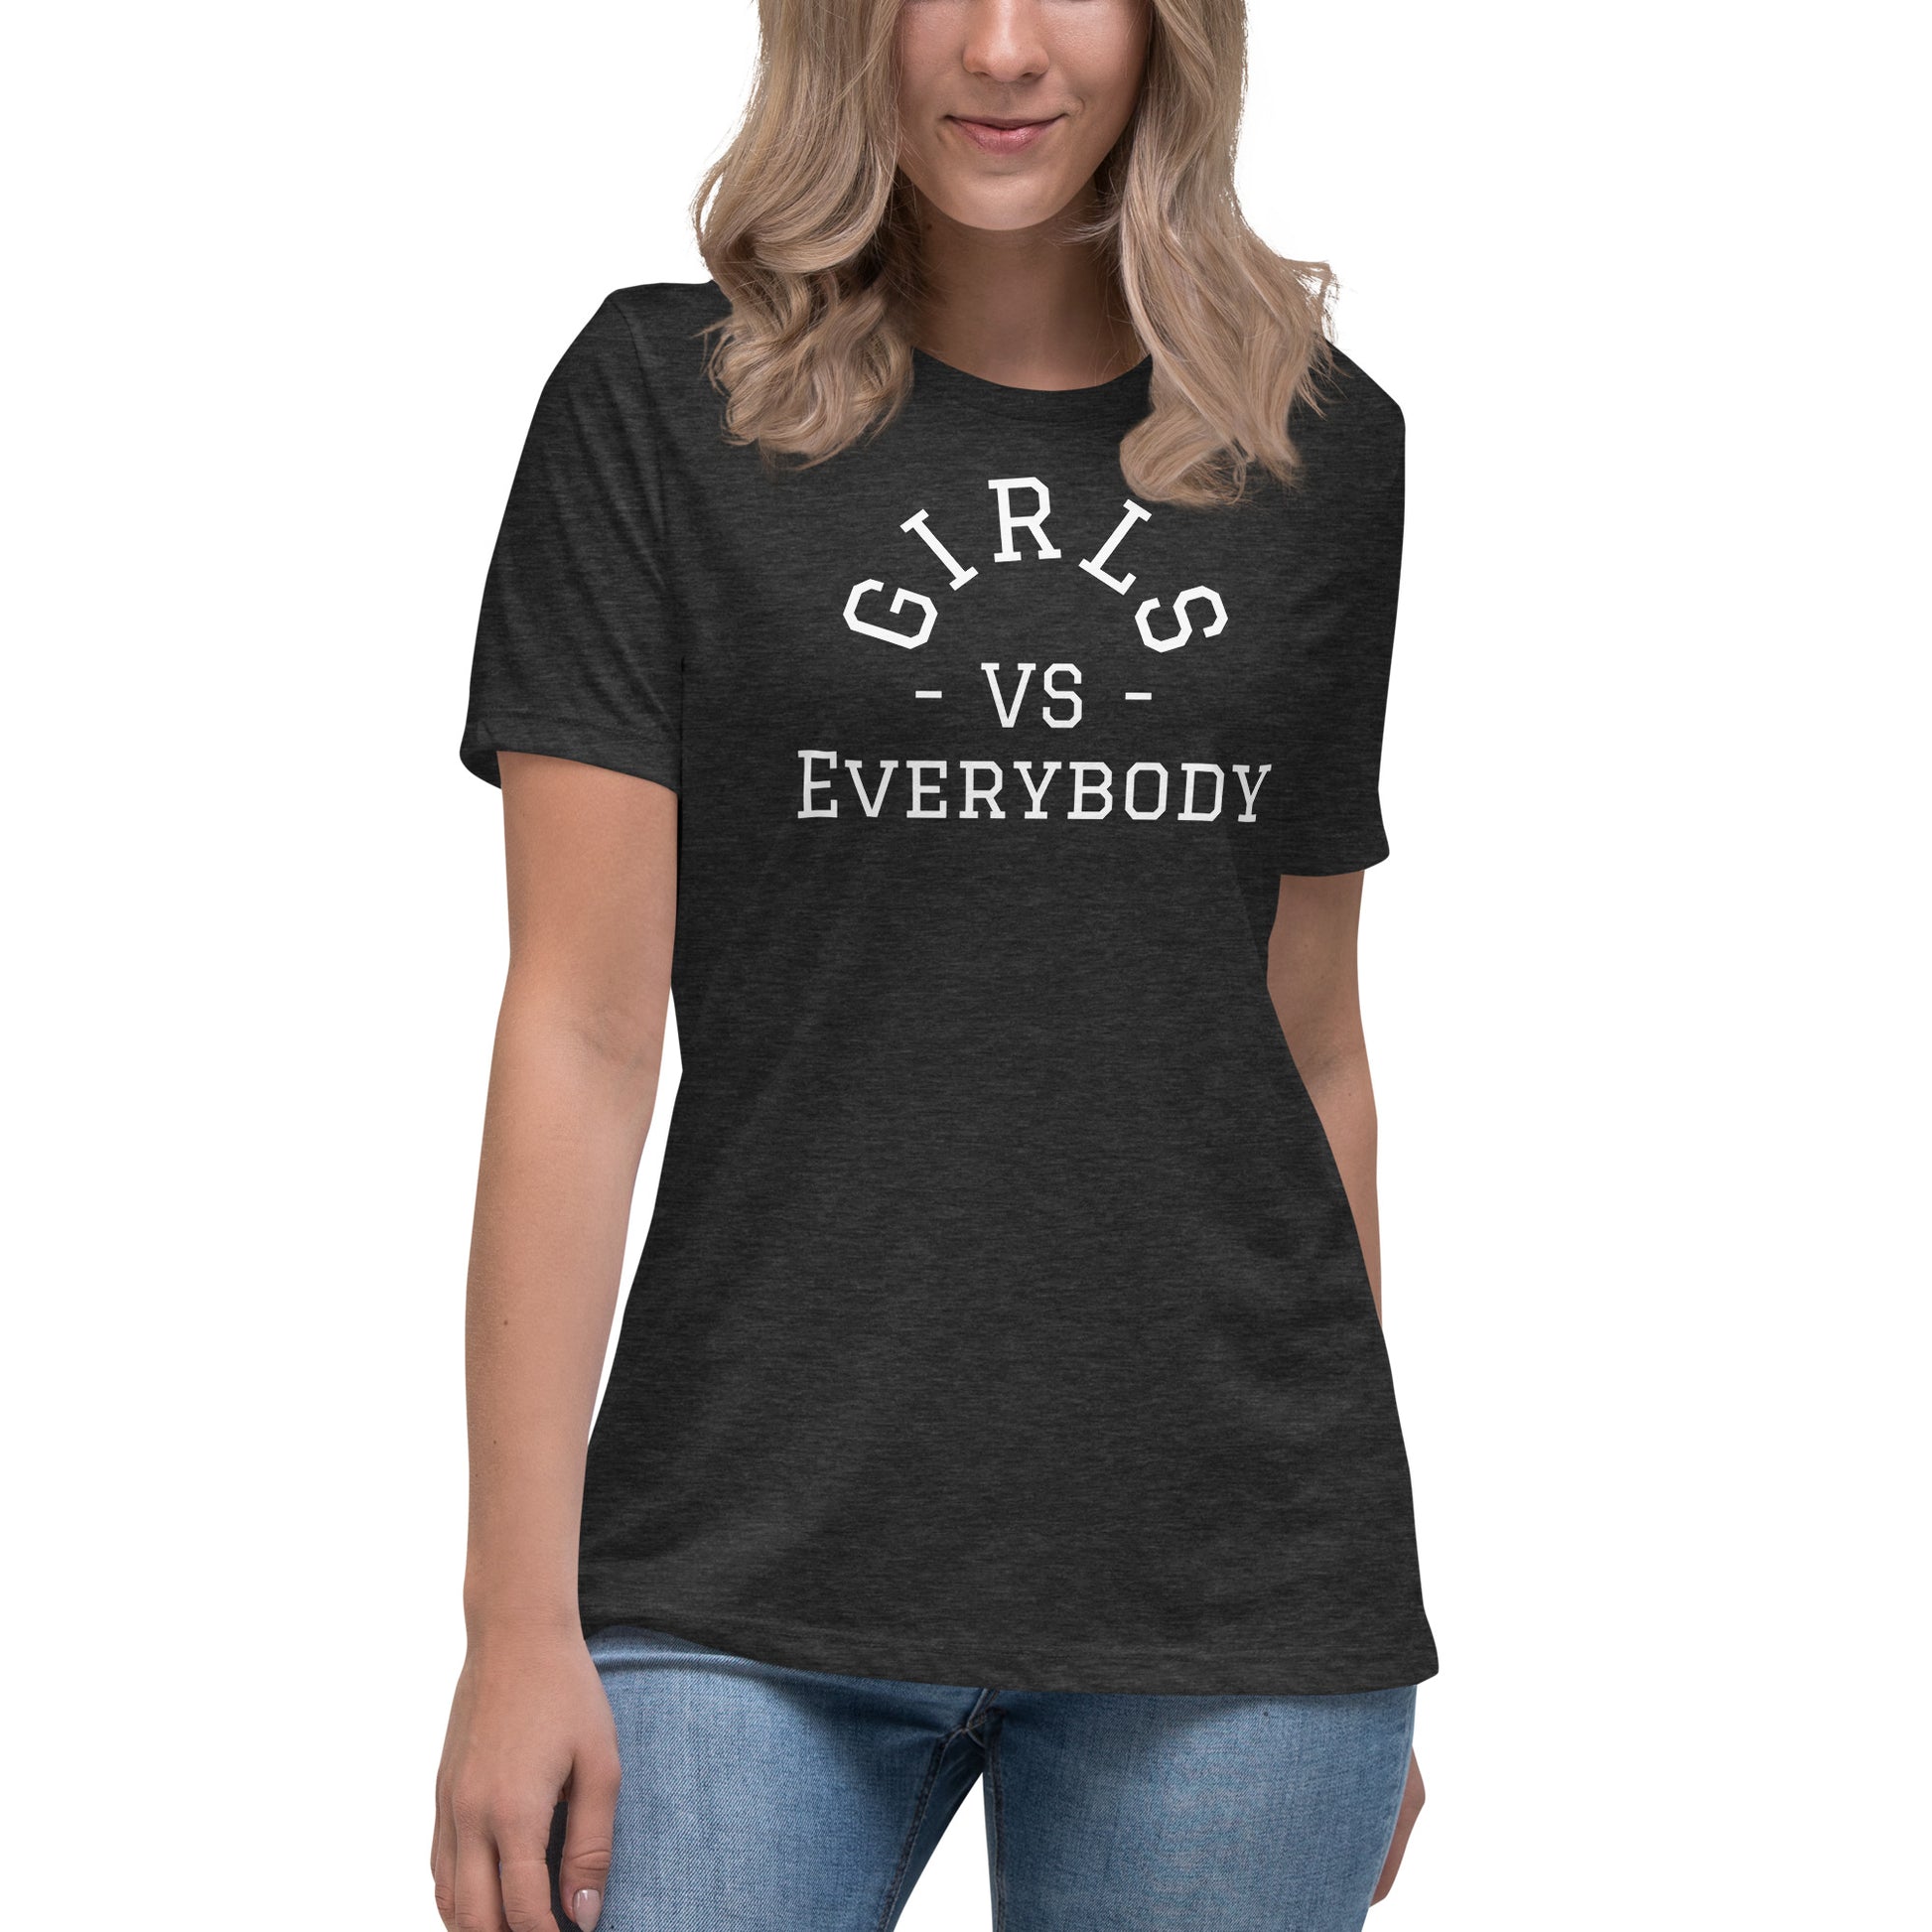 Best women's dark grey heather short sleeve graphic tee shirt that says "Girls VS Everybody"